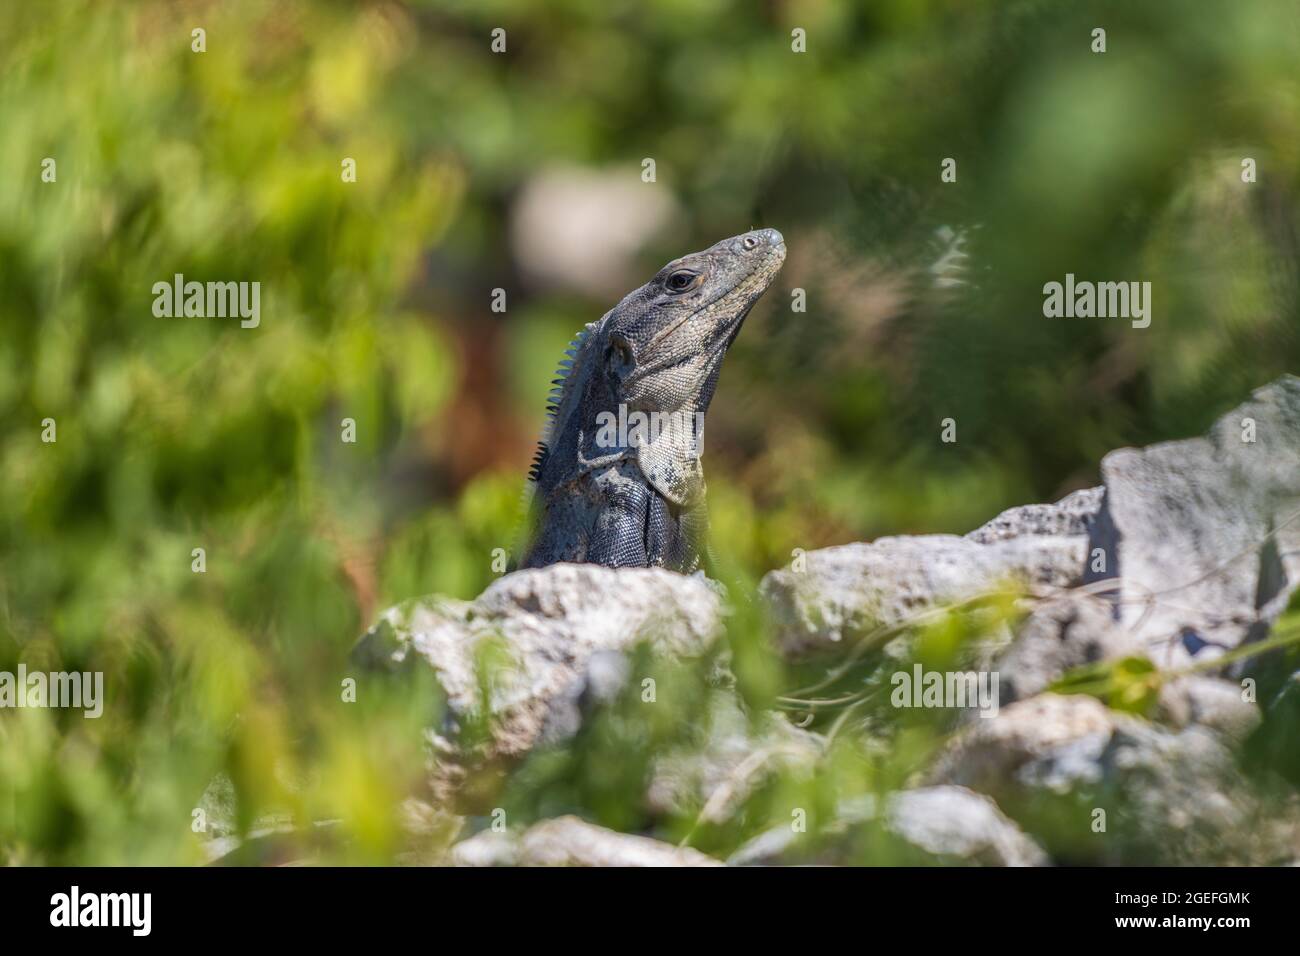 Selective shot of Spiny-Tailed Iguana (Ctenosaura similis) on the stones onature background Stock Photo